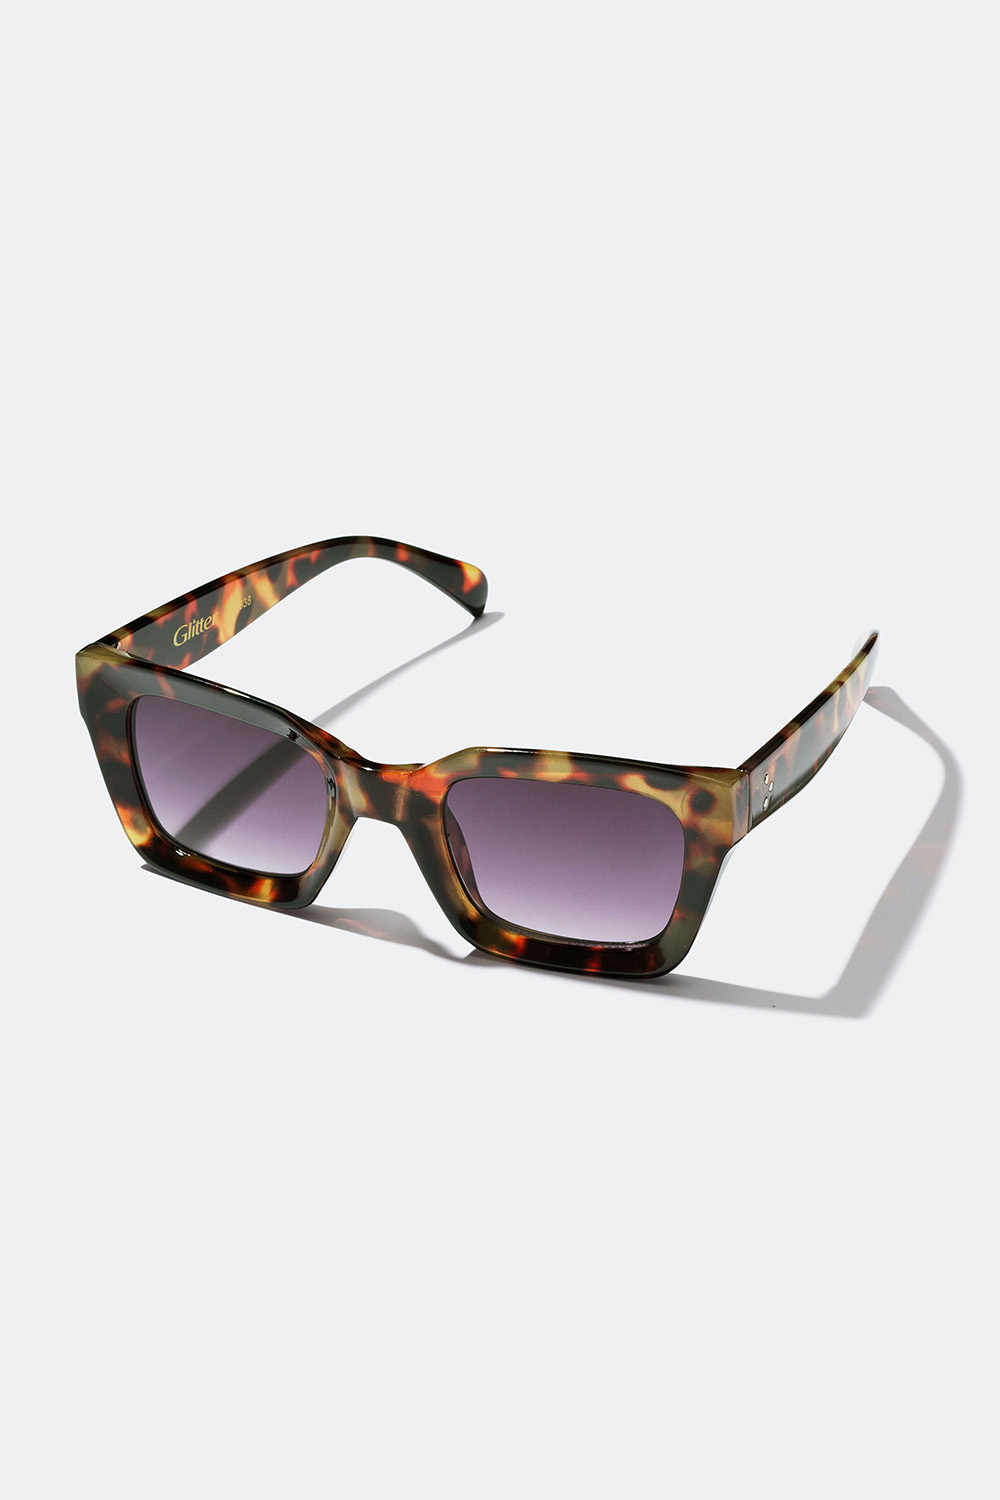 Shop solbriller med en firkantet på Glitter.dk!